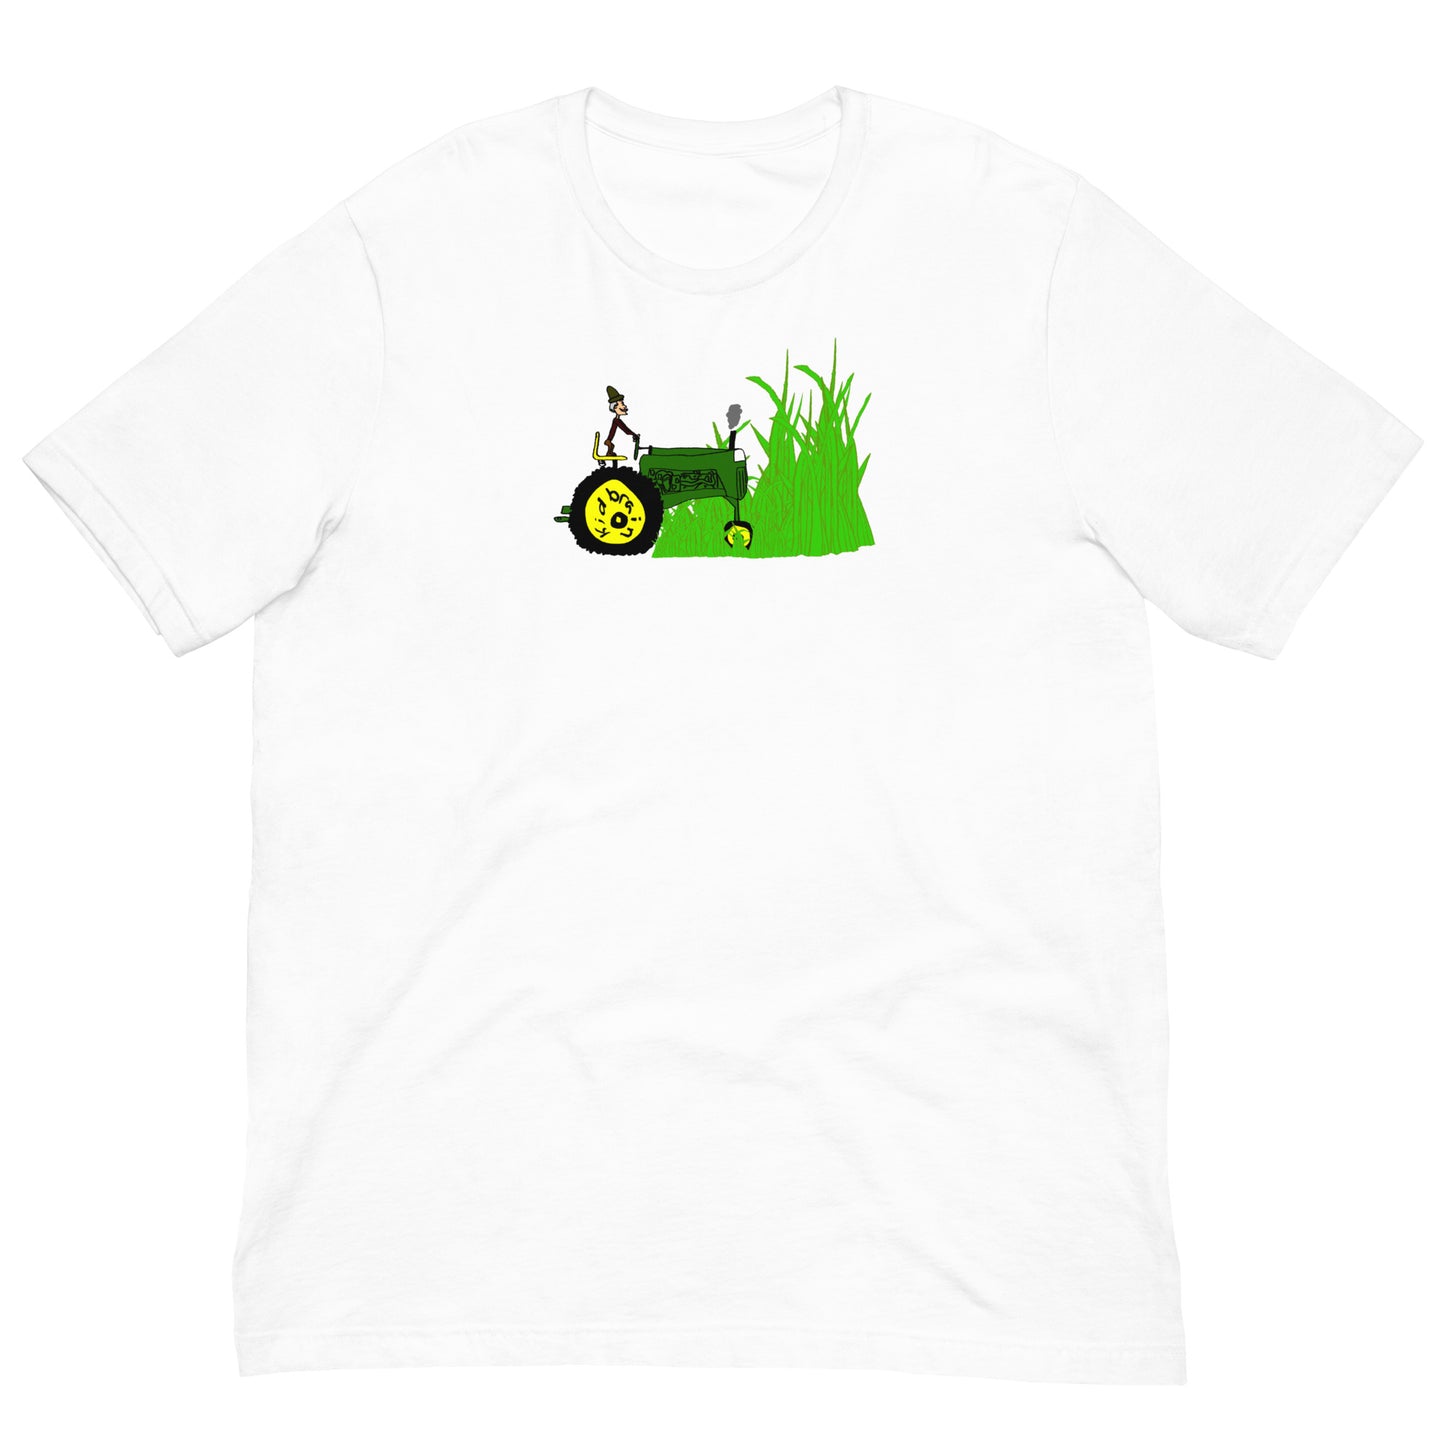 You Cut The Grass t-shirt